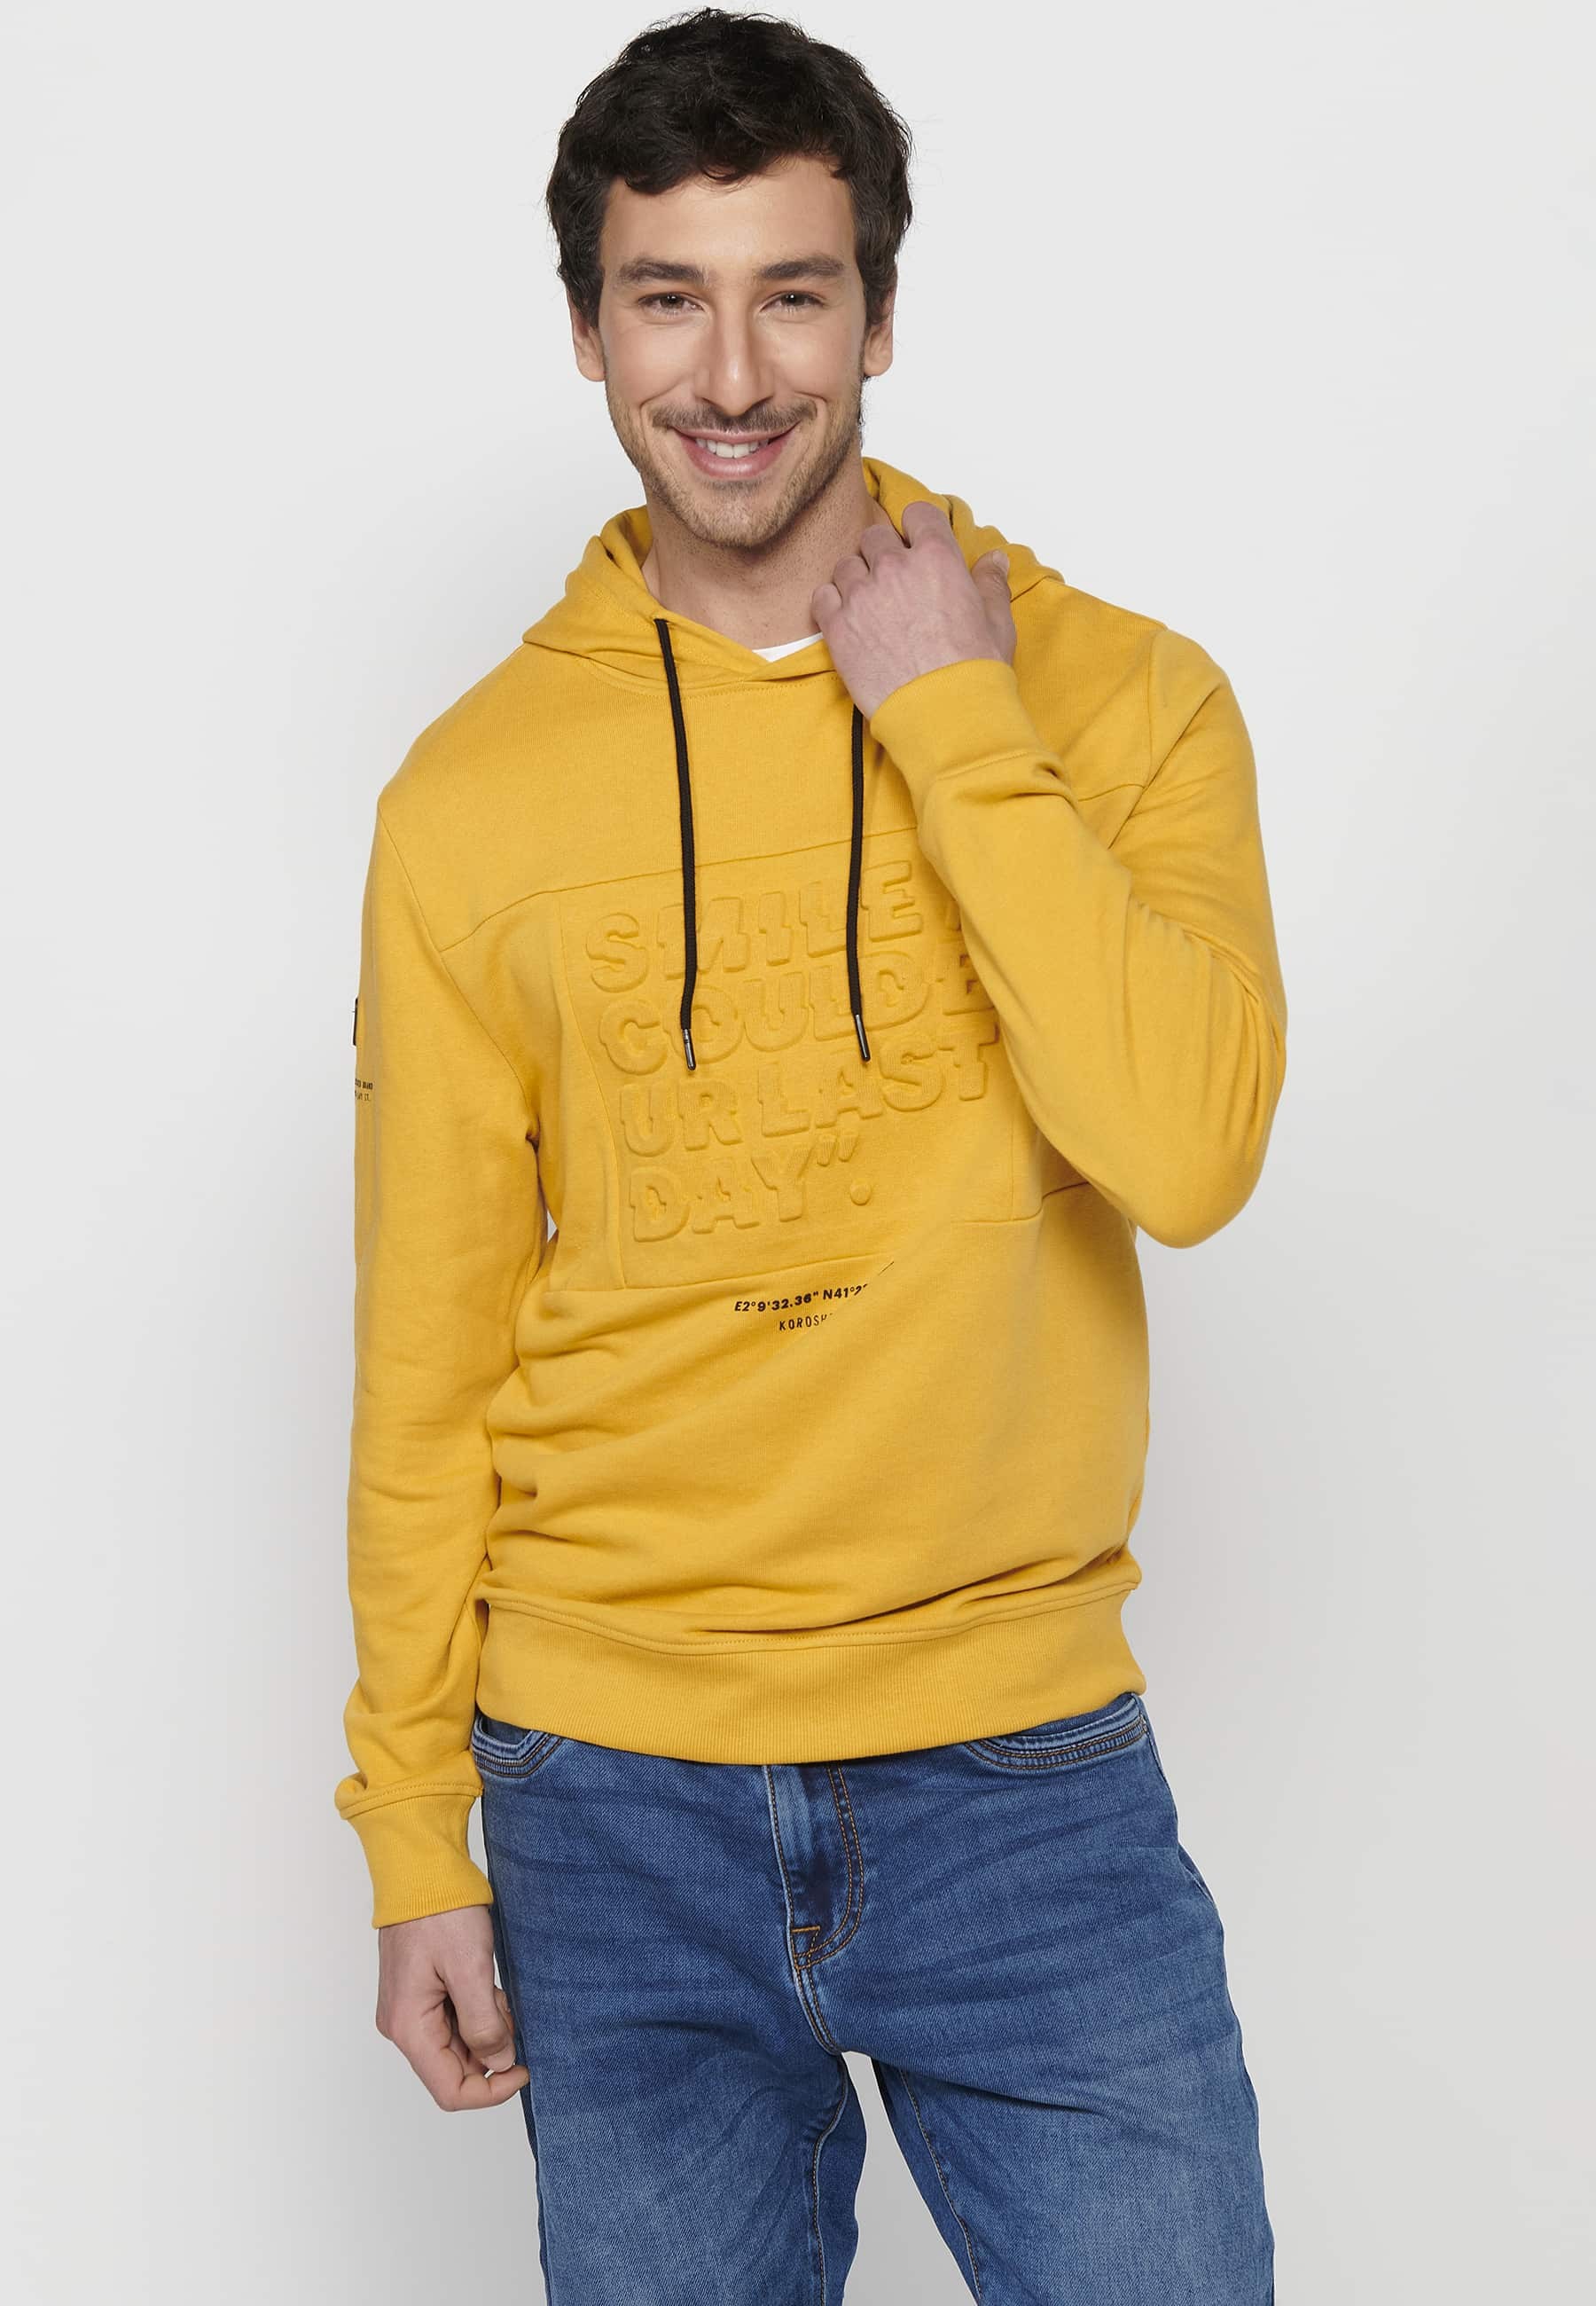 Langärmliges Sweatshirt mit gerippten Abschlüssen und Kapuzenkragen mit geprägten Buchstaben auf der Vorderseite in Gelb für Herren